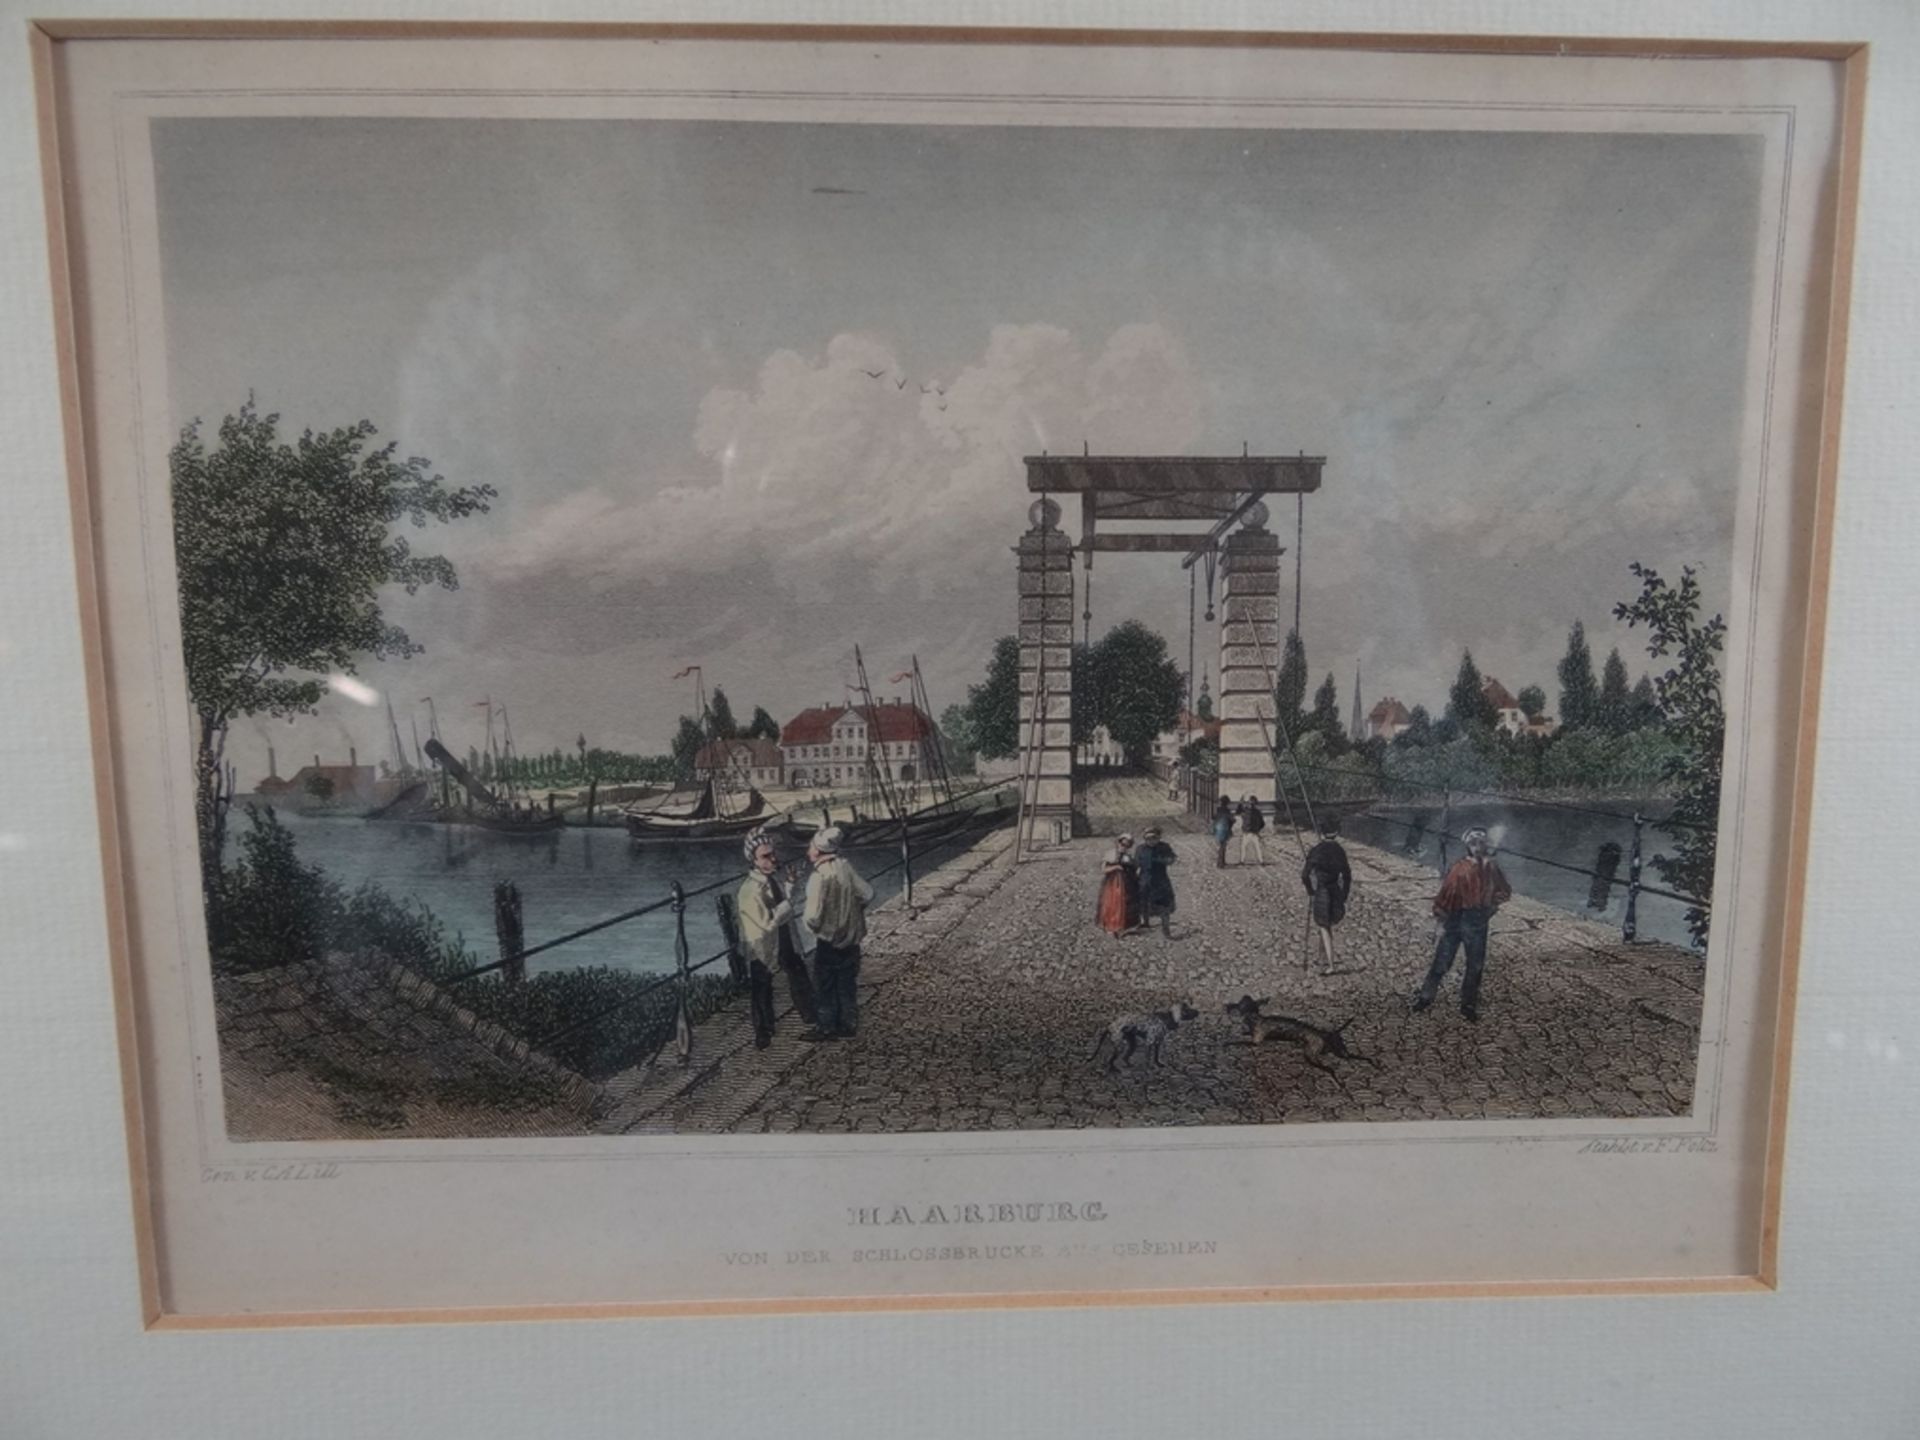 5x Ansichtenstiche um 1840, Hamburg und umzu, koloriert und gut gerahmt, RG je 26x32 cm, - Image 12 of 19